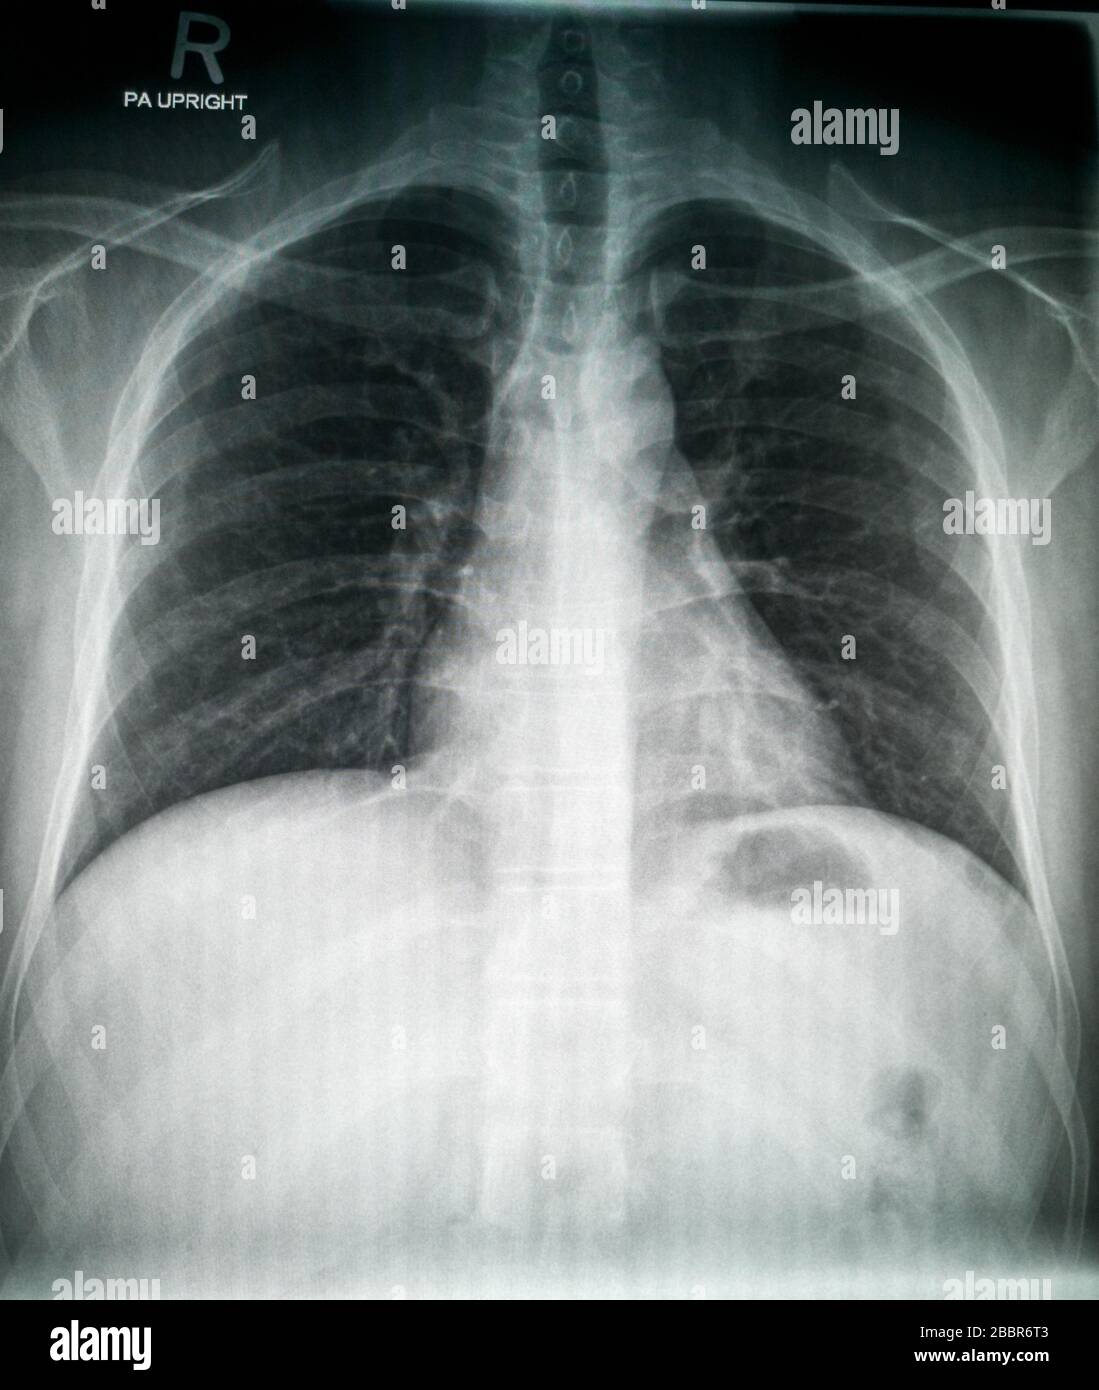 Röntgenaufnahme des normalen männlichen Patienten mit hoher Bildqualität, die die normale Anatomie zeigt Stockfoto